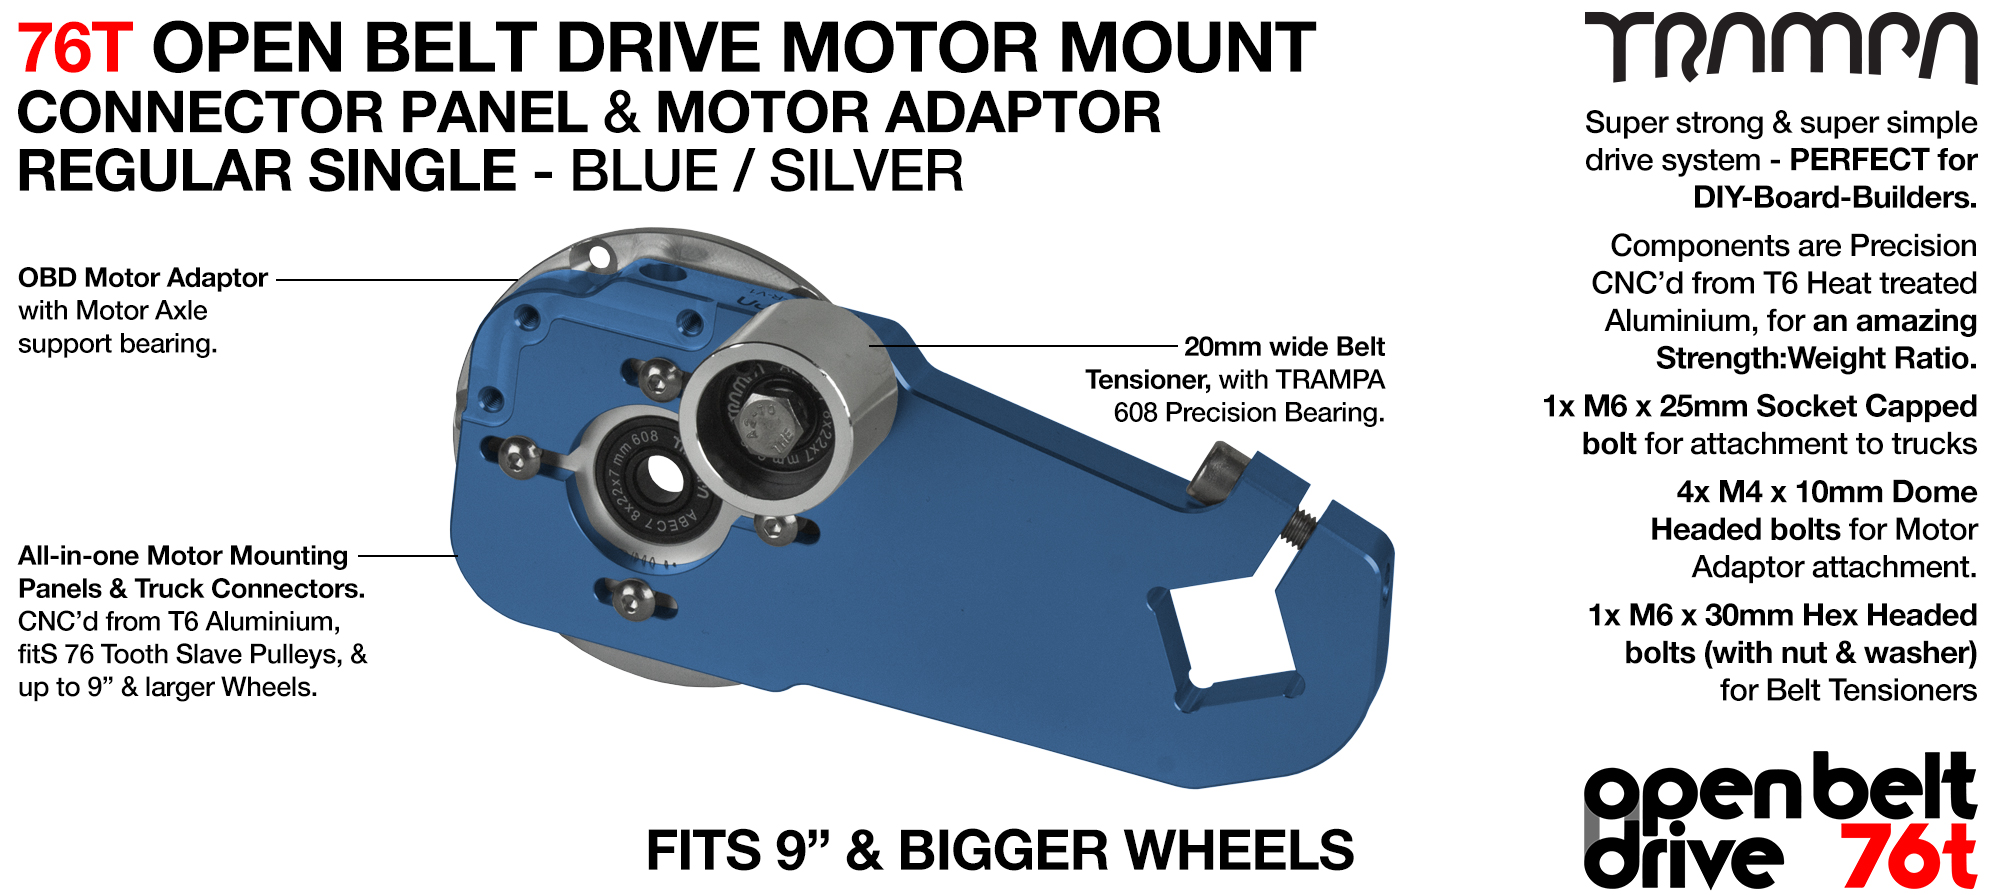 76T Open Belt Drive Motor Mount & Motor Adaptor - SINGLE BLUE